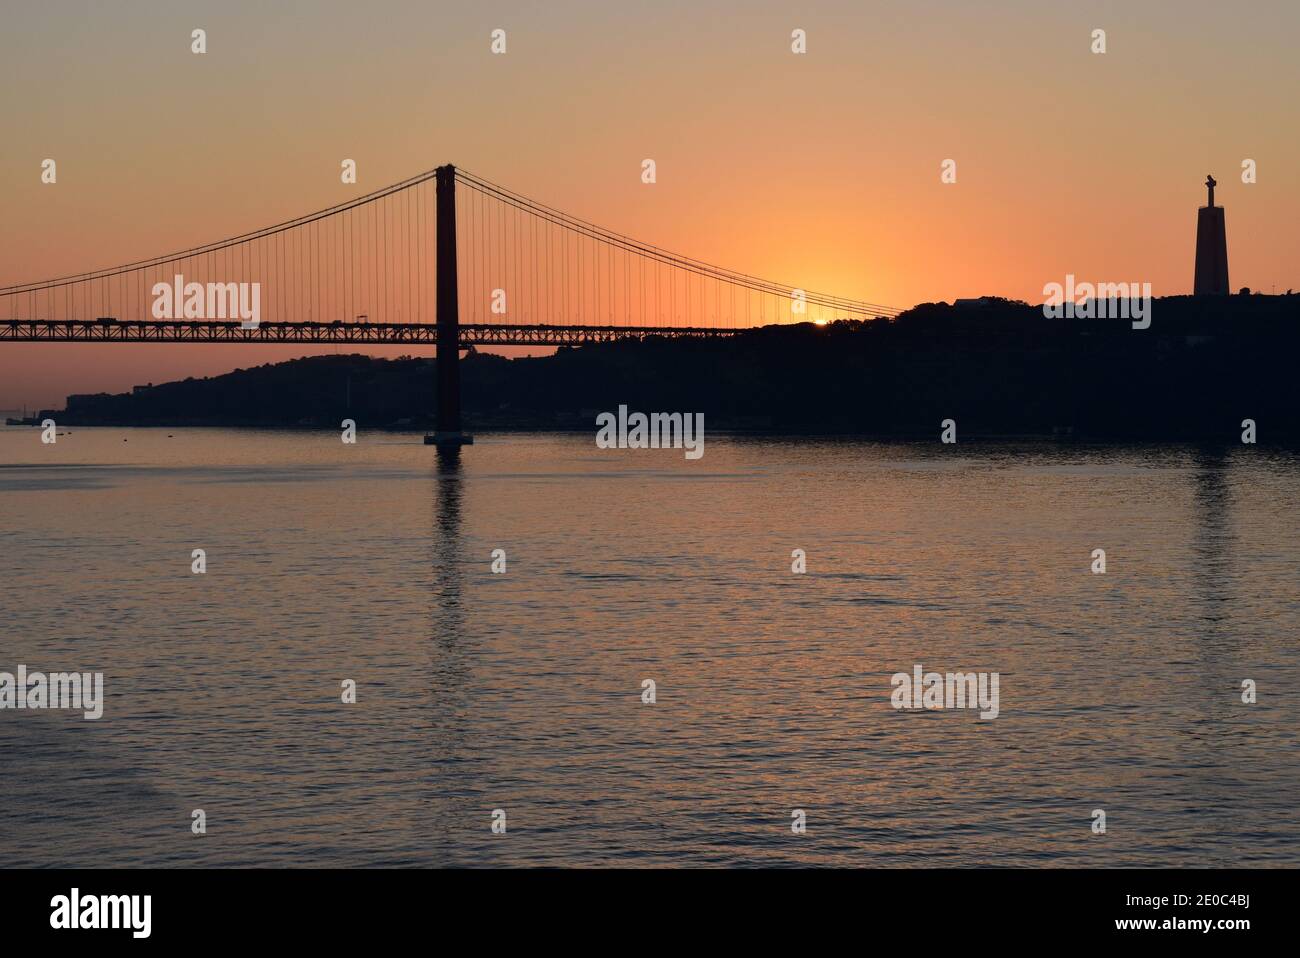 Portogallo, Lisbona, il ponte del 25 aprile e il Cristo Re all'alba sul fiume Tago, con colori magnifici. Foto Stock